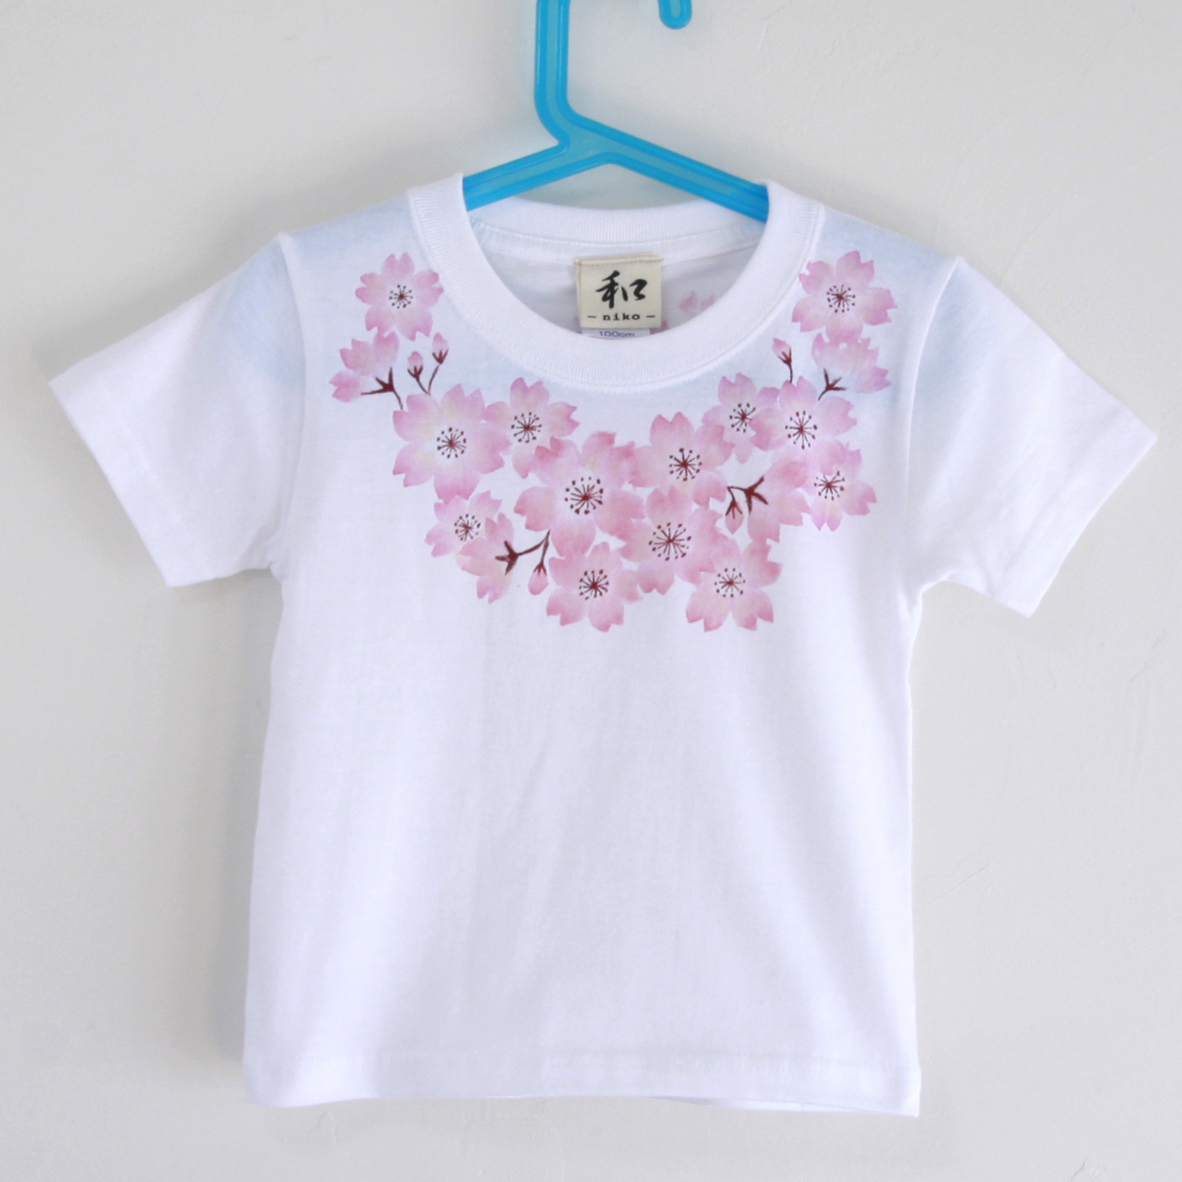 Ropa para niños Camiseta para niños Talla 120 Ramillete blanco Patrón de flor de cerezo Camiseta hecha a mano Camiseta pintada a mano Patrón japonés Regalo de primavera, tapas, camiseta de manga corta, 120(115~124cm)